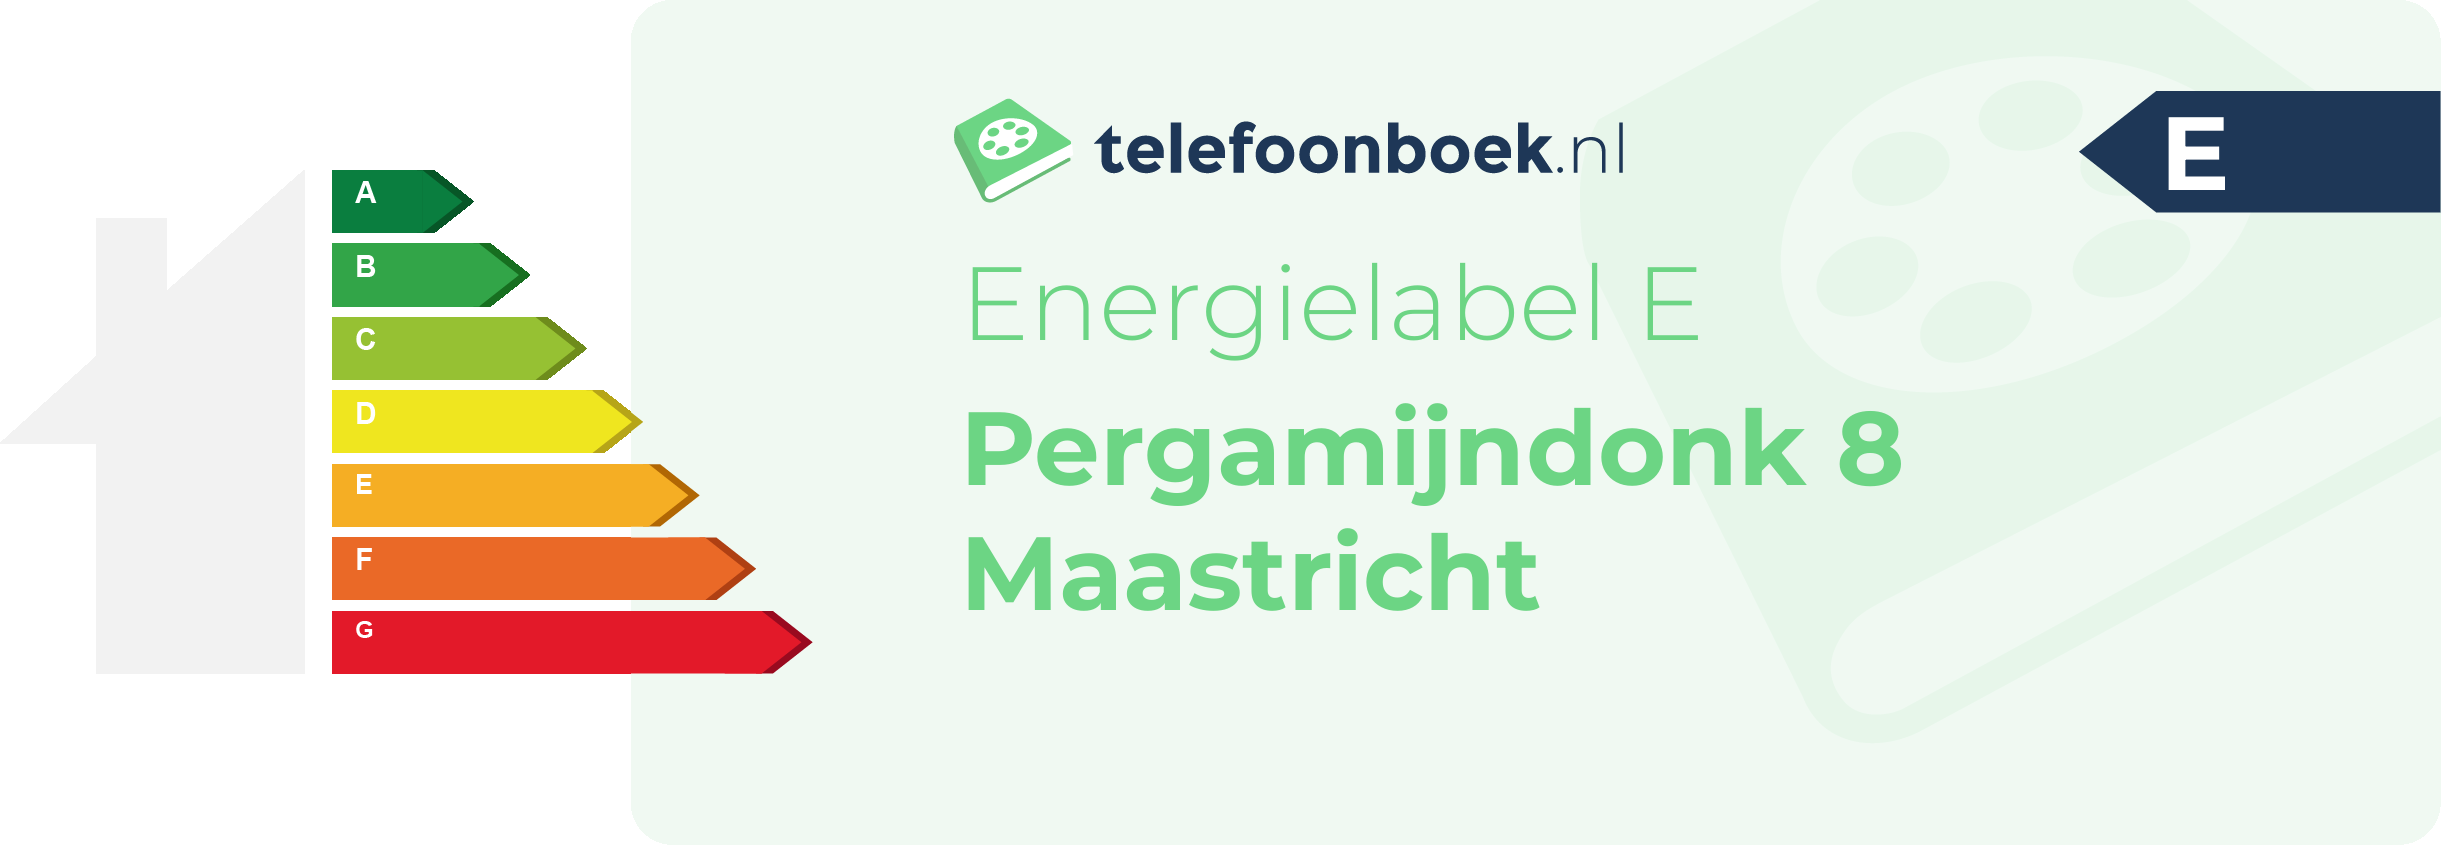 Energielabel Pergamijndonk 8 Maastricht